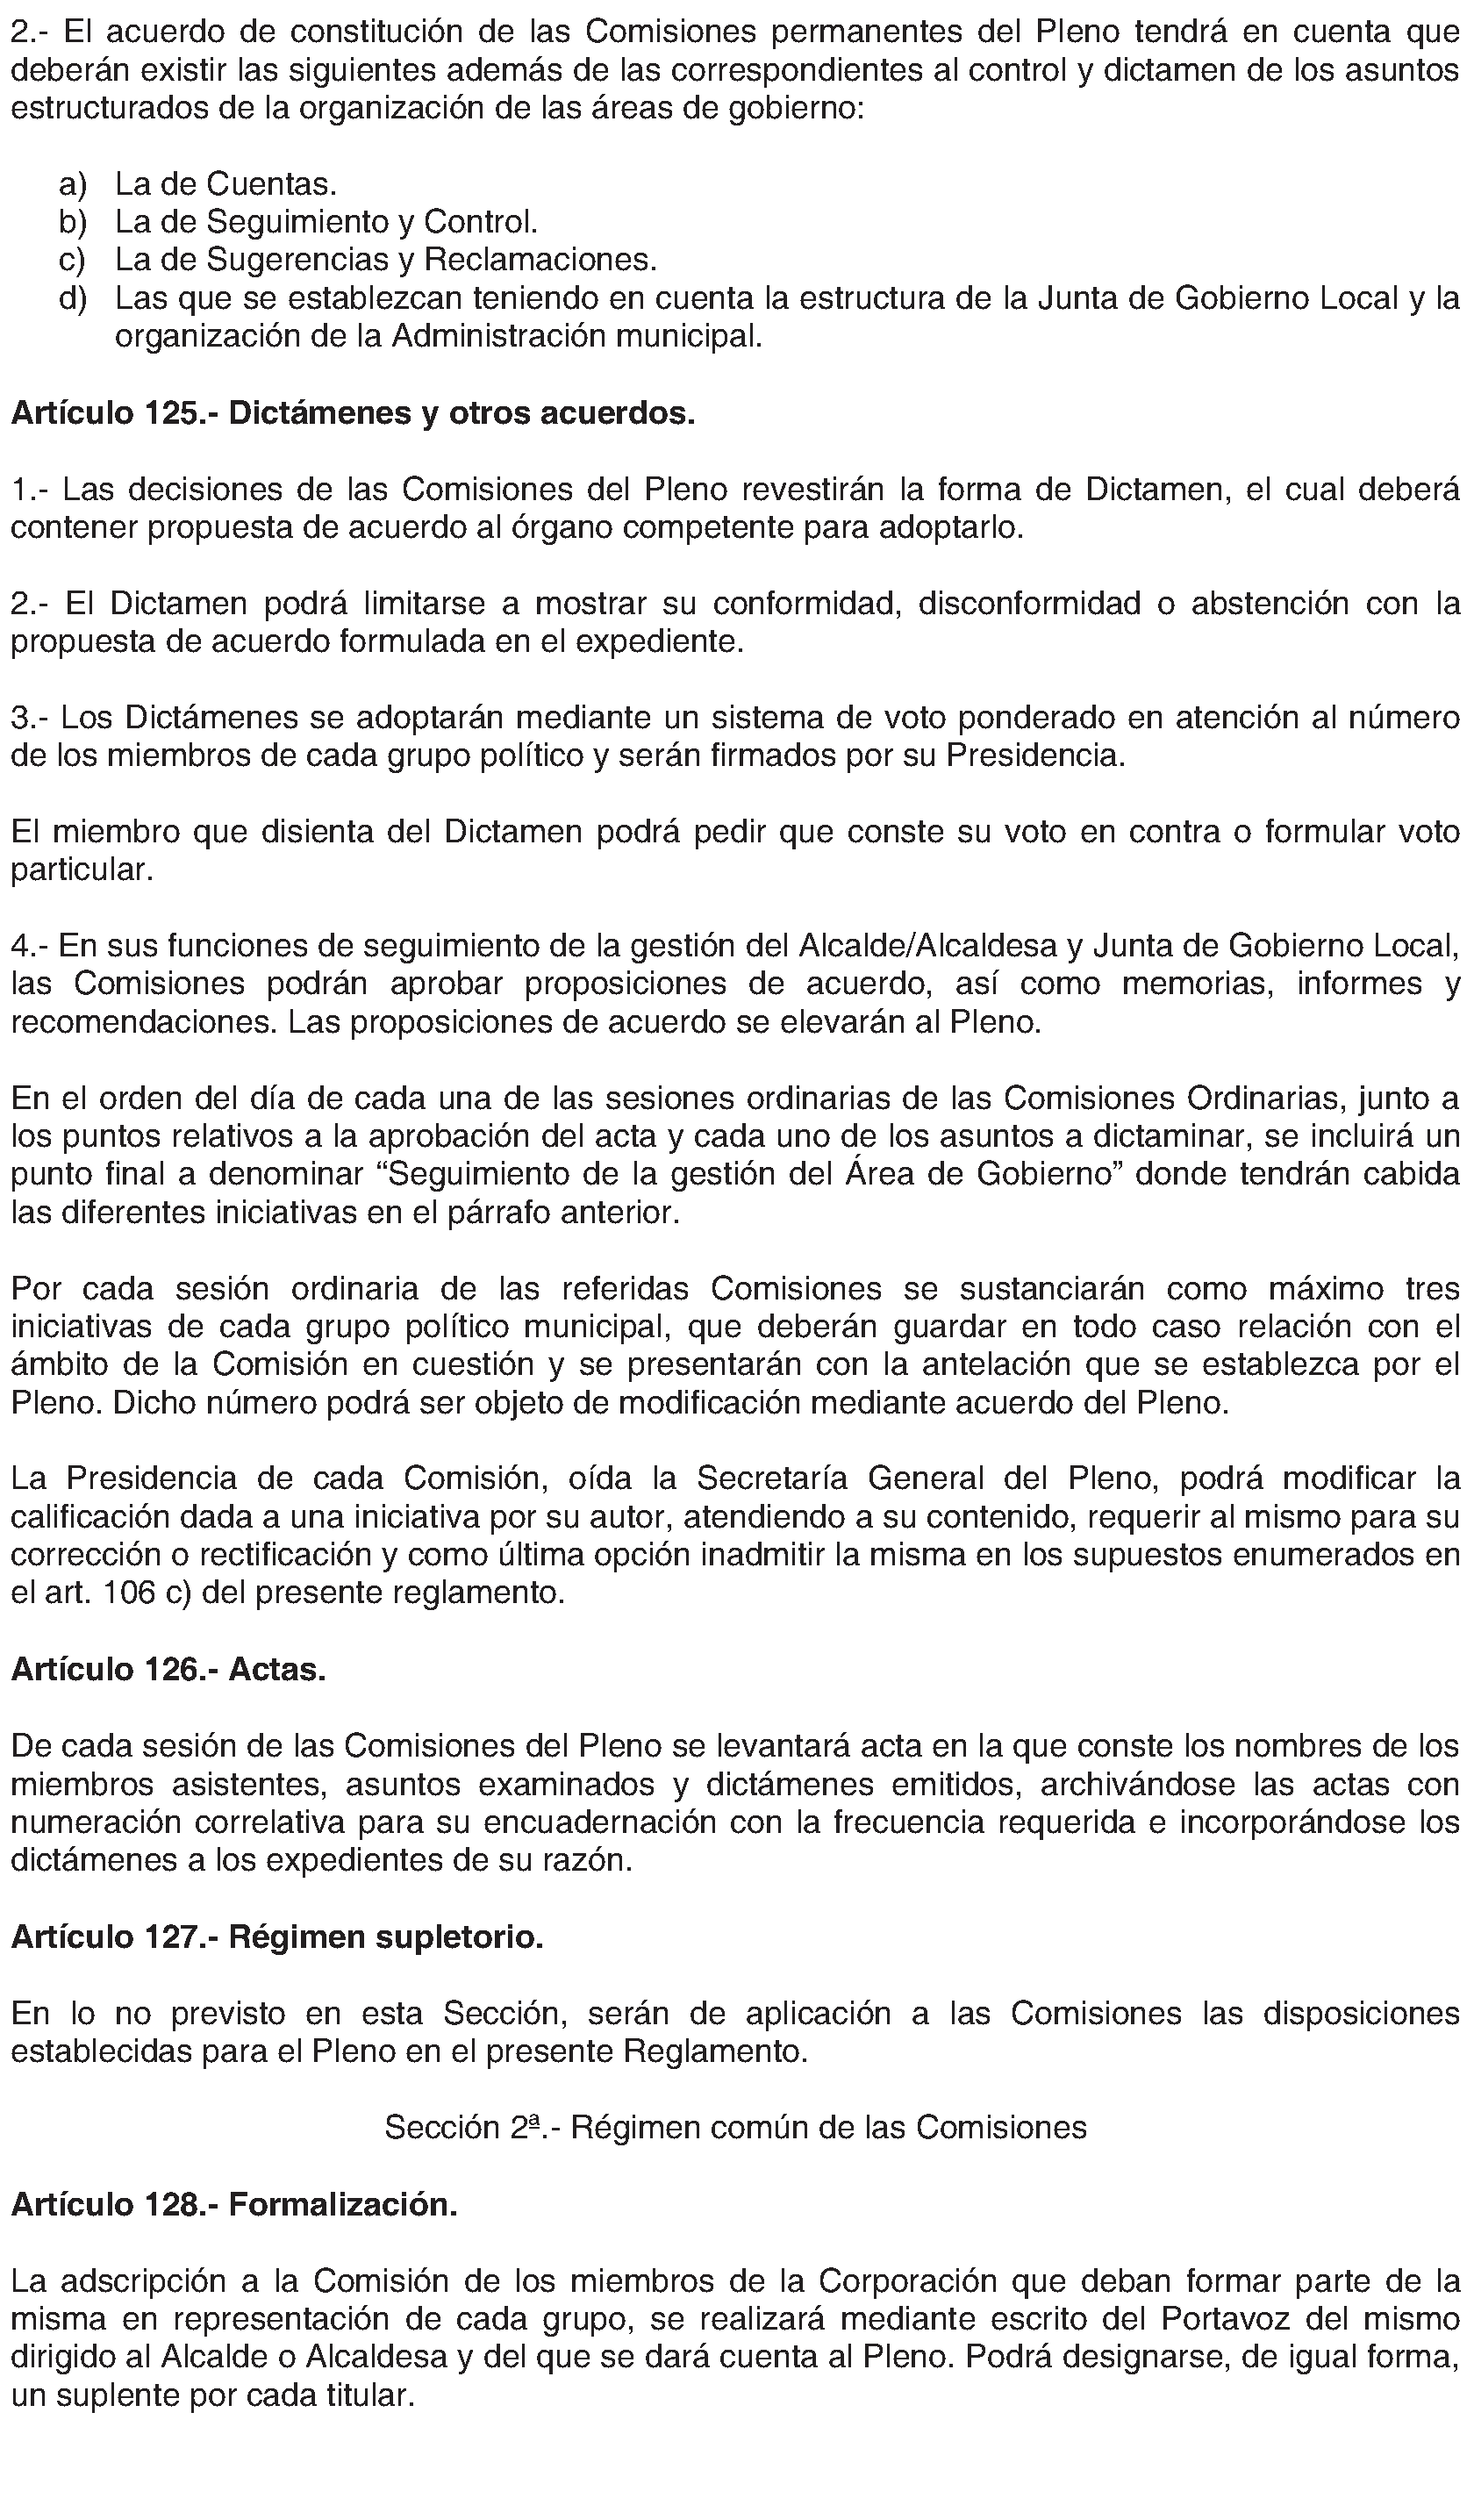 Imagen del artículo Alcalá de Henares. Organización y funcionamiento. Reglamento Orgánico Municipal